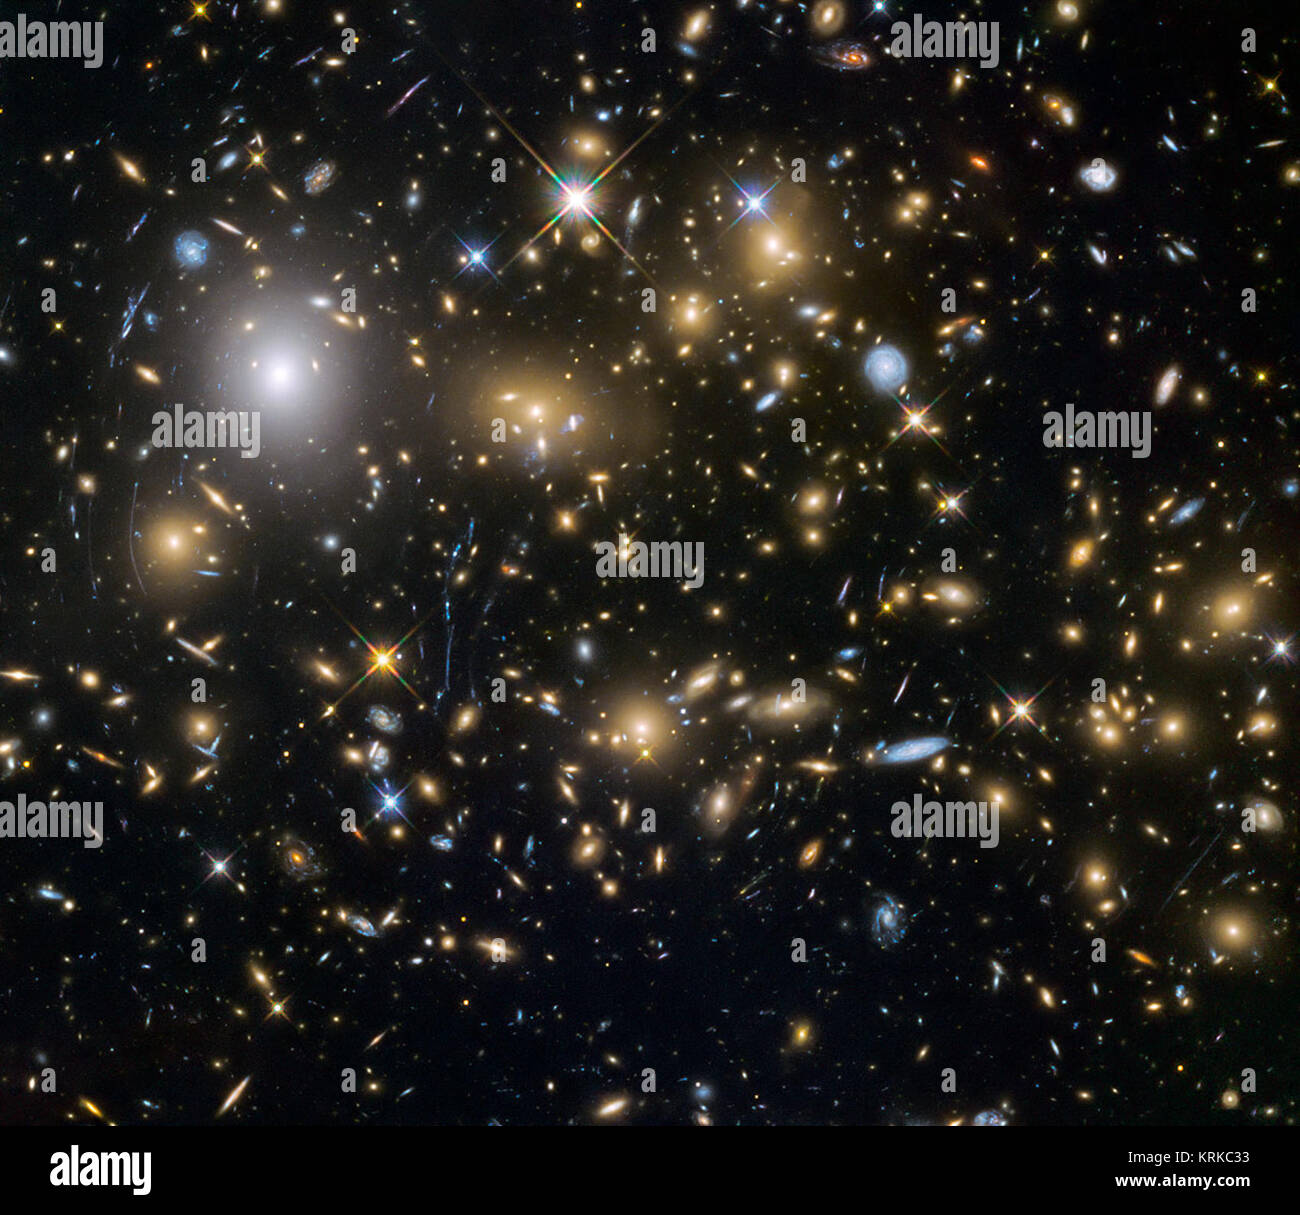 Dieses Bild von der NASA/ESA Hubble Space Telescope zeigt die Galaxienhaufen MACSJ 0717.5 +3745. Dies ist eines der sechs studierte von Hubble Frontier Felder Programm, die zusammen die tiefsten Bilder von Gravitationslinsen jemals produziert haben. Aufgrund der großen Masse des Clusters es Biegen ist der Hintergrund Objekte, die als Lupe. Es ist eines der am meisten massiven Galaxie bekannt Cluster, und es ist auch das grösste bekannte Gravitationslinsen. Alle Galaxienhaufen bekannt und gemessen, MACS J0717 Linsen der größte Bereich des Himmels. Hubble Spione Urknall Grenzen Stockfoto